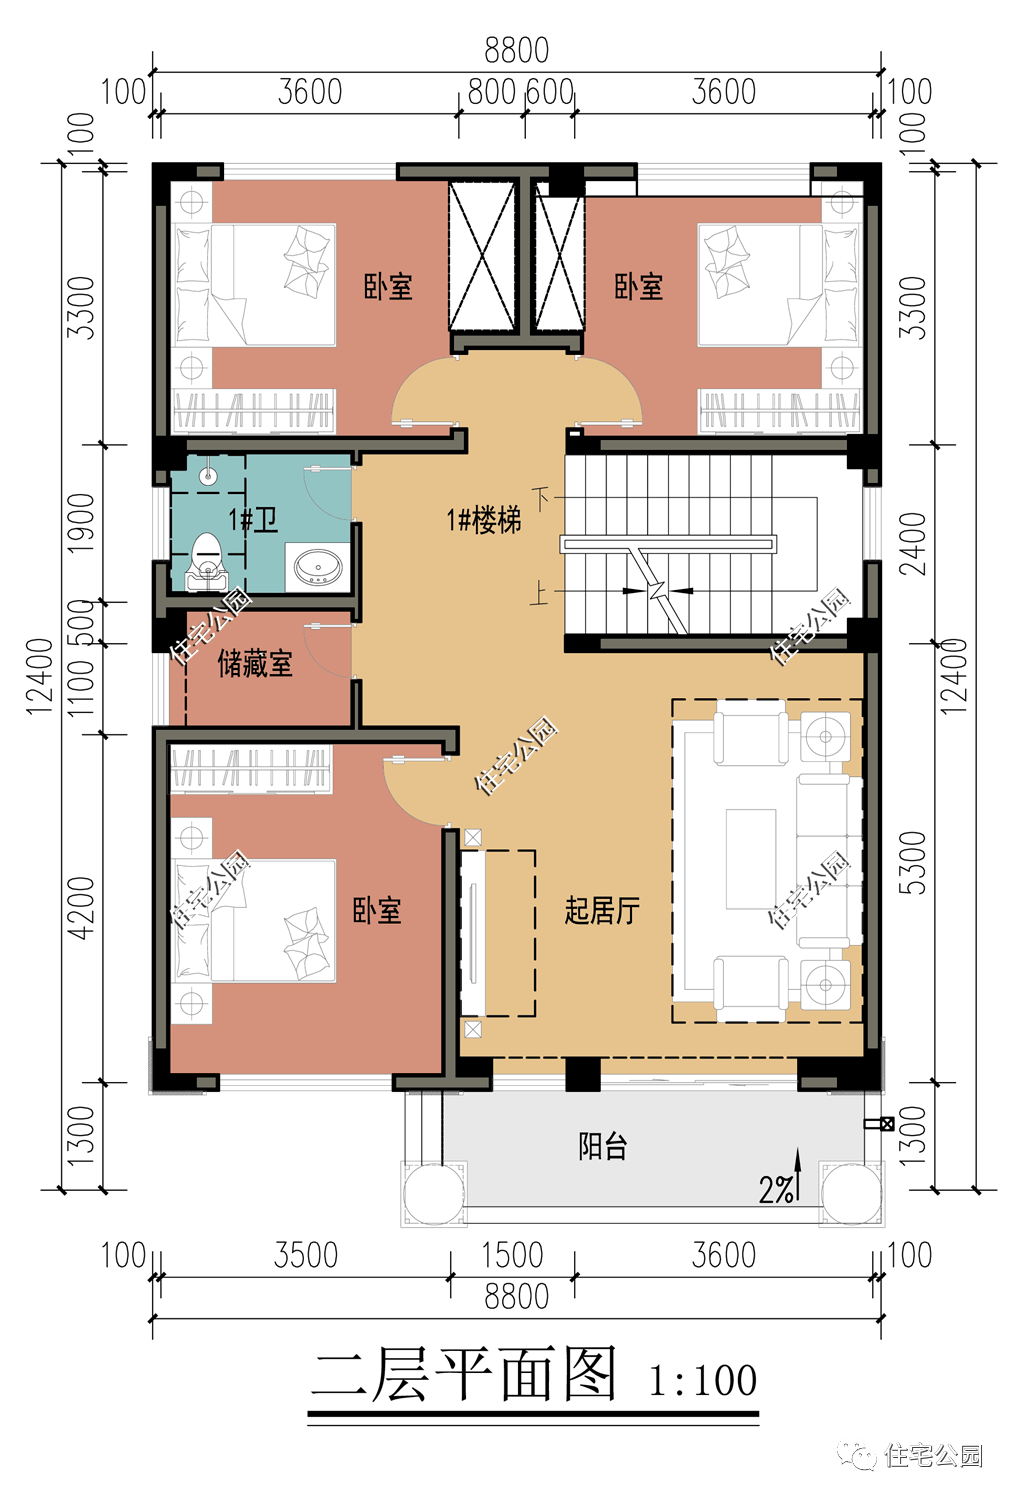 8面宽 多卧室 大露台,12×8米宜居三层别墅